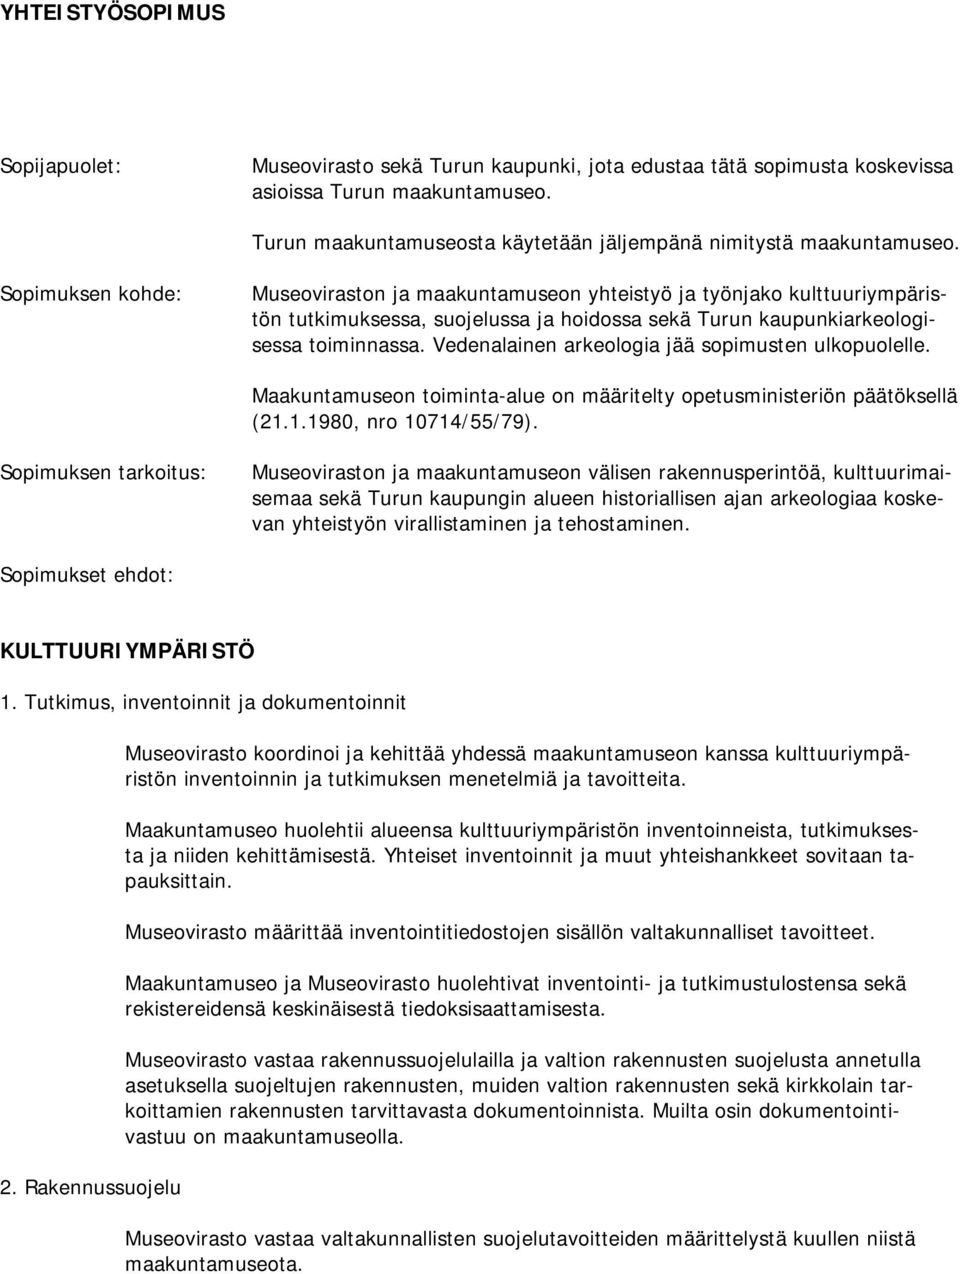 Sopimuksen kohde: Museoviraston ja maakuntamuseon yhteistyö ja työnjako kulttuuriympäristön tutkimuksessa, suojelussa ja hoidossa sekä Turun kaupunkiarkeologisessa toiminnassa.